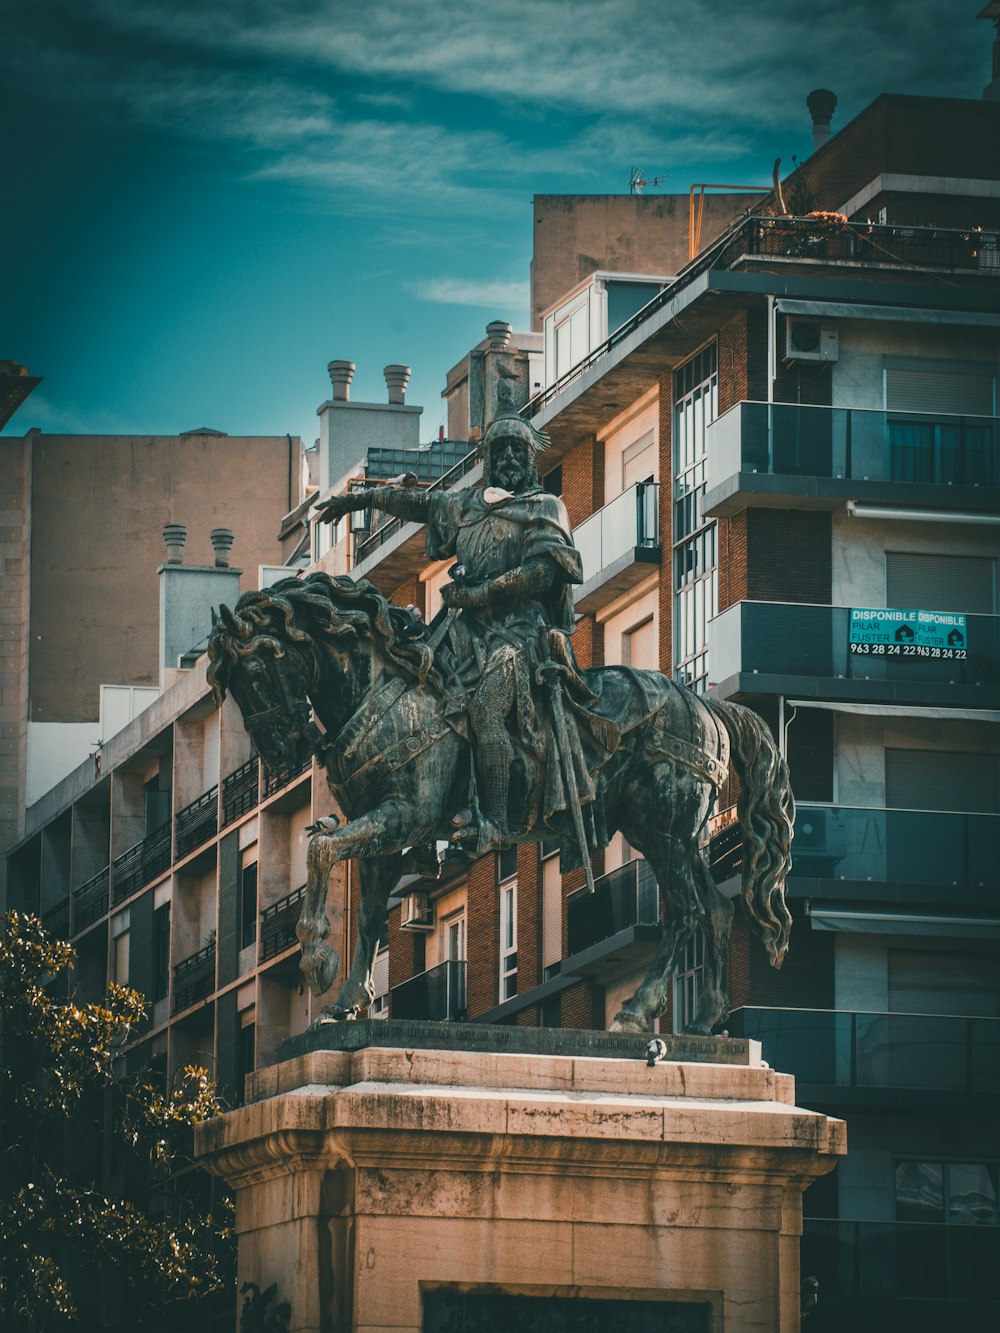 Eine Statue eines Mannes, der auf dem Rücken eines Pferdes reitet